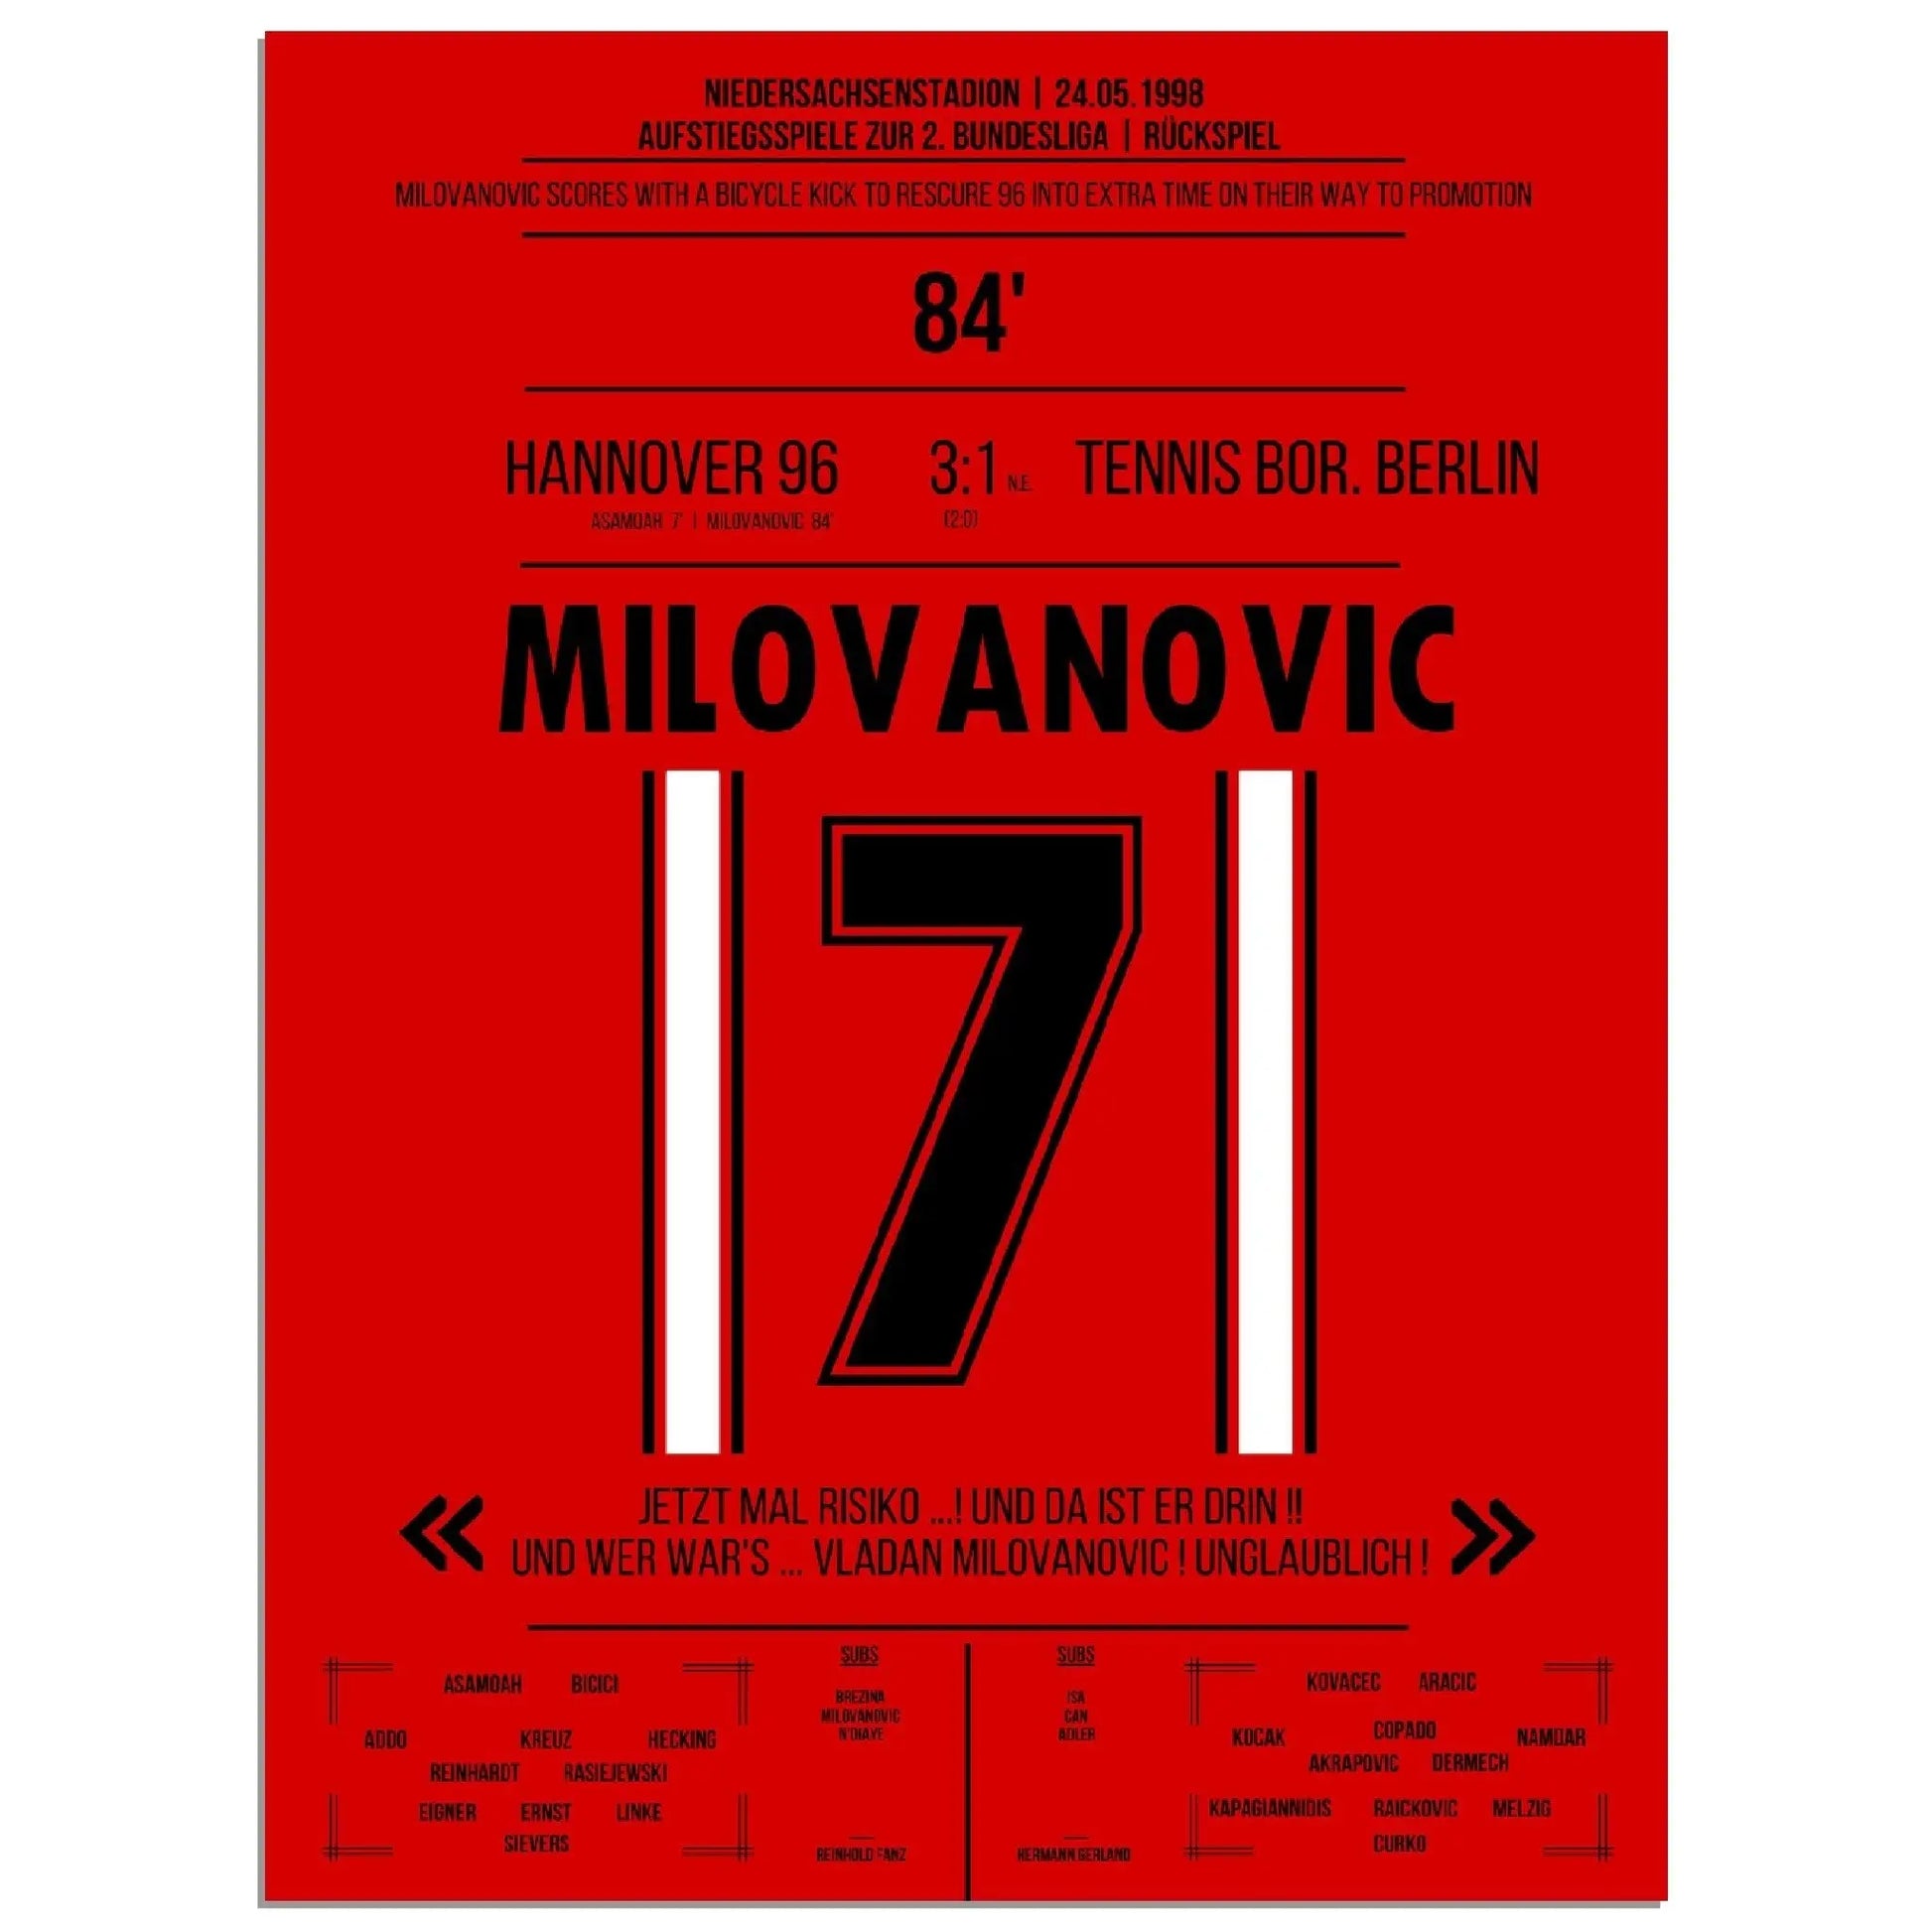 Milovanovic Fallrückzieher bei Hannover's  Rückkehr in die 2. Bundesliga 1998 